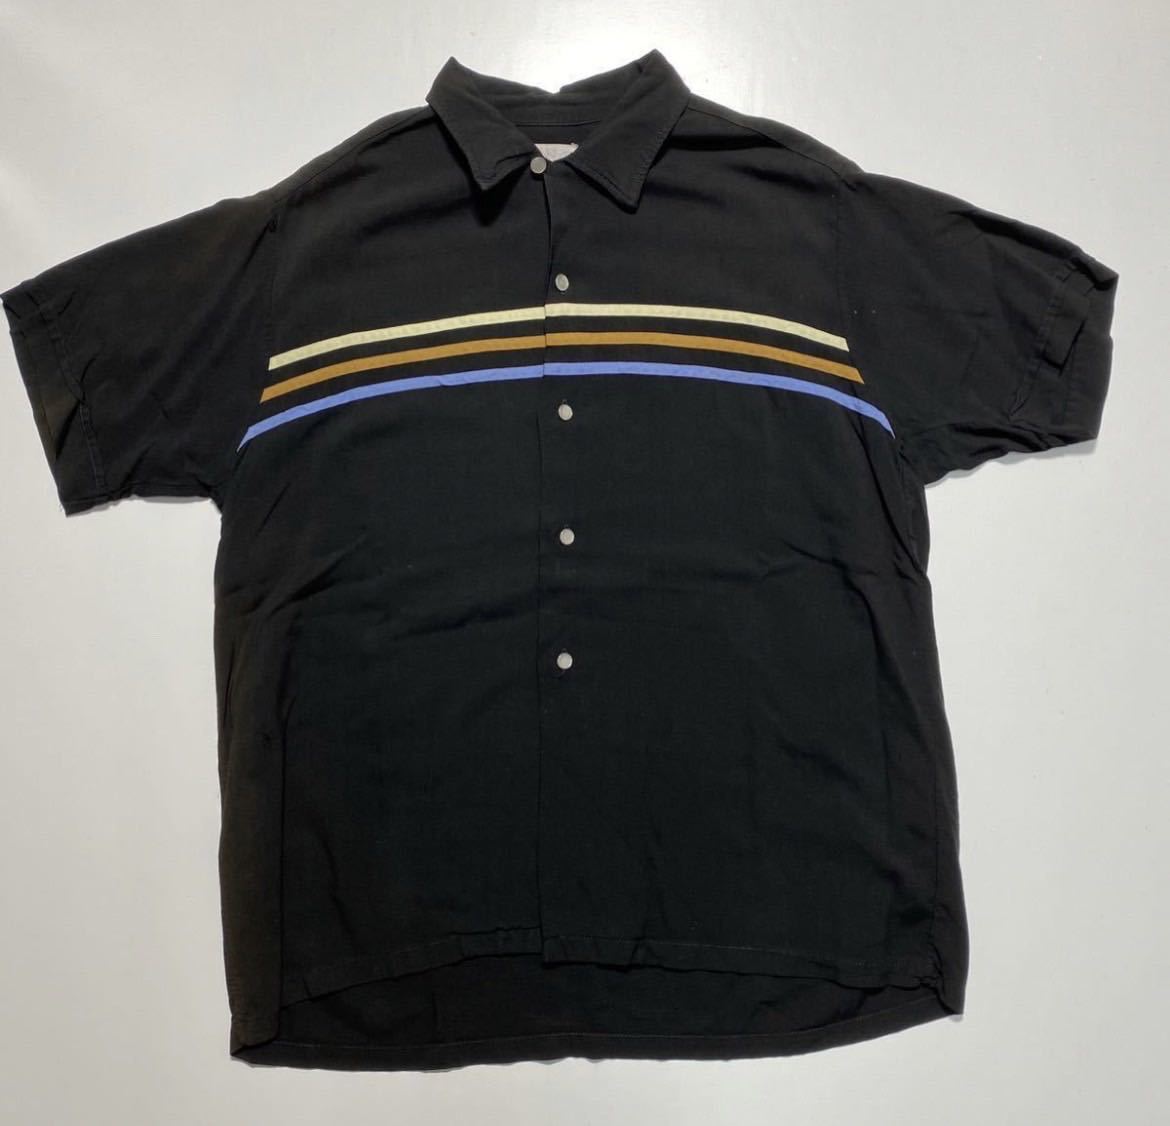 【L】60s Vintage California Palm S/S Rayon Shirt Black 60年代 ヴィンテージ カリフォルニアパルム 半袖 レーヨン シャツ ブラック R3